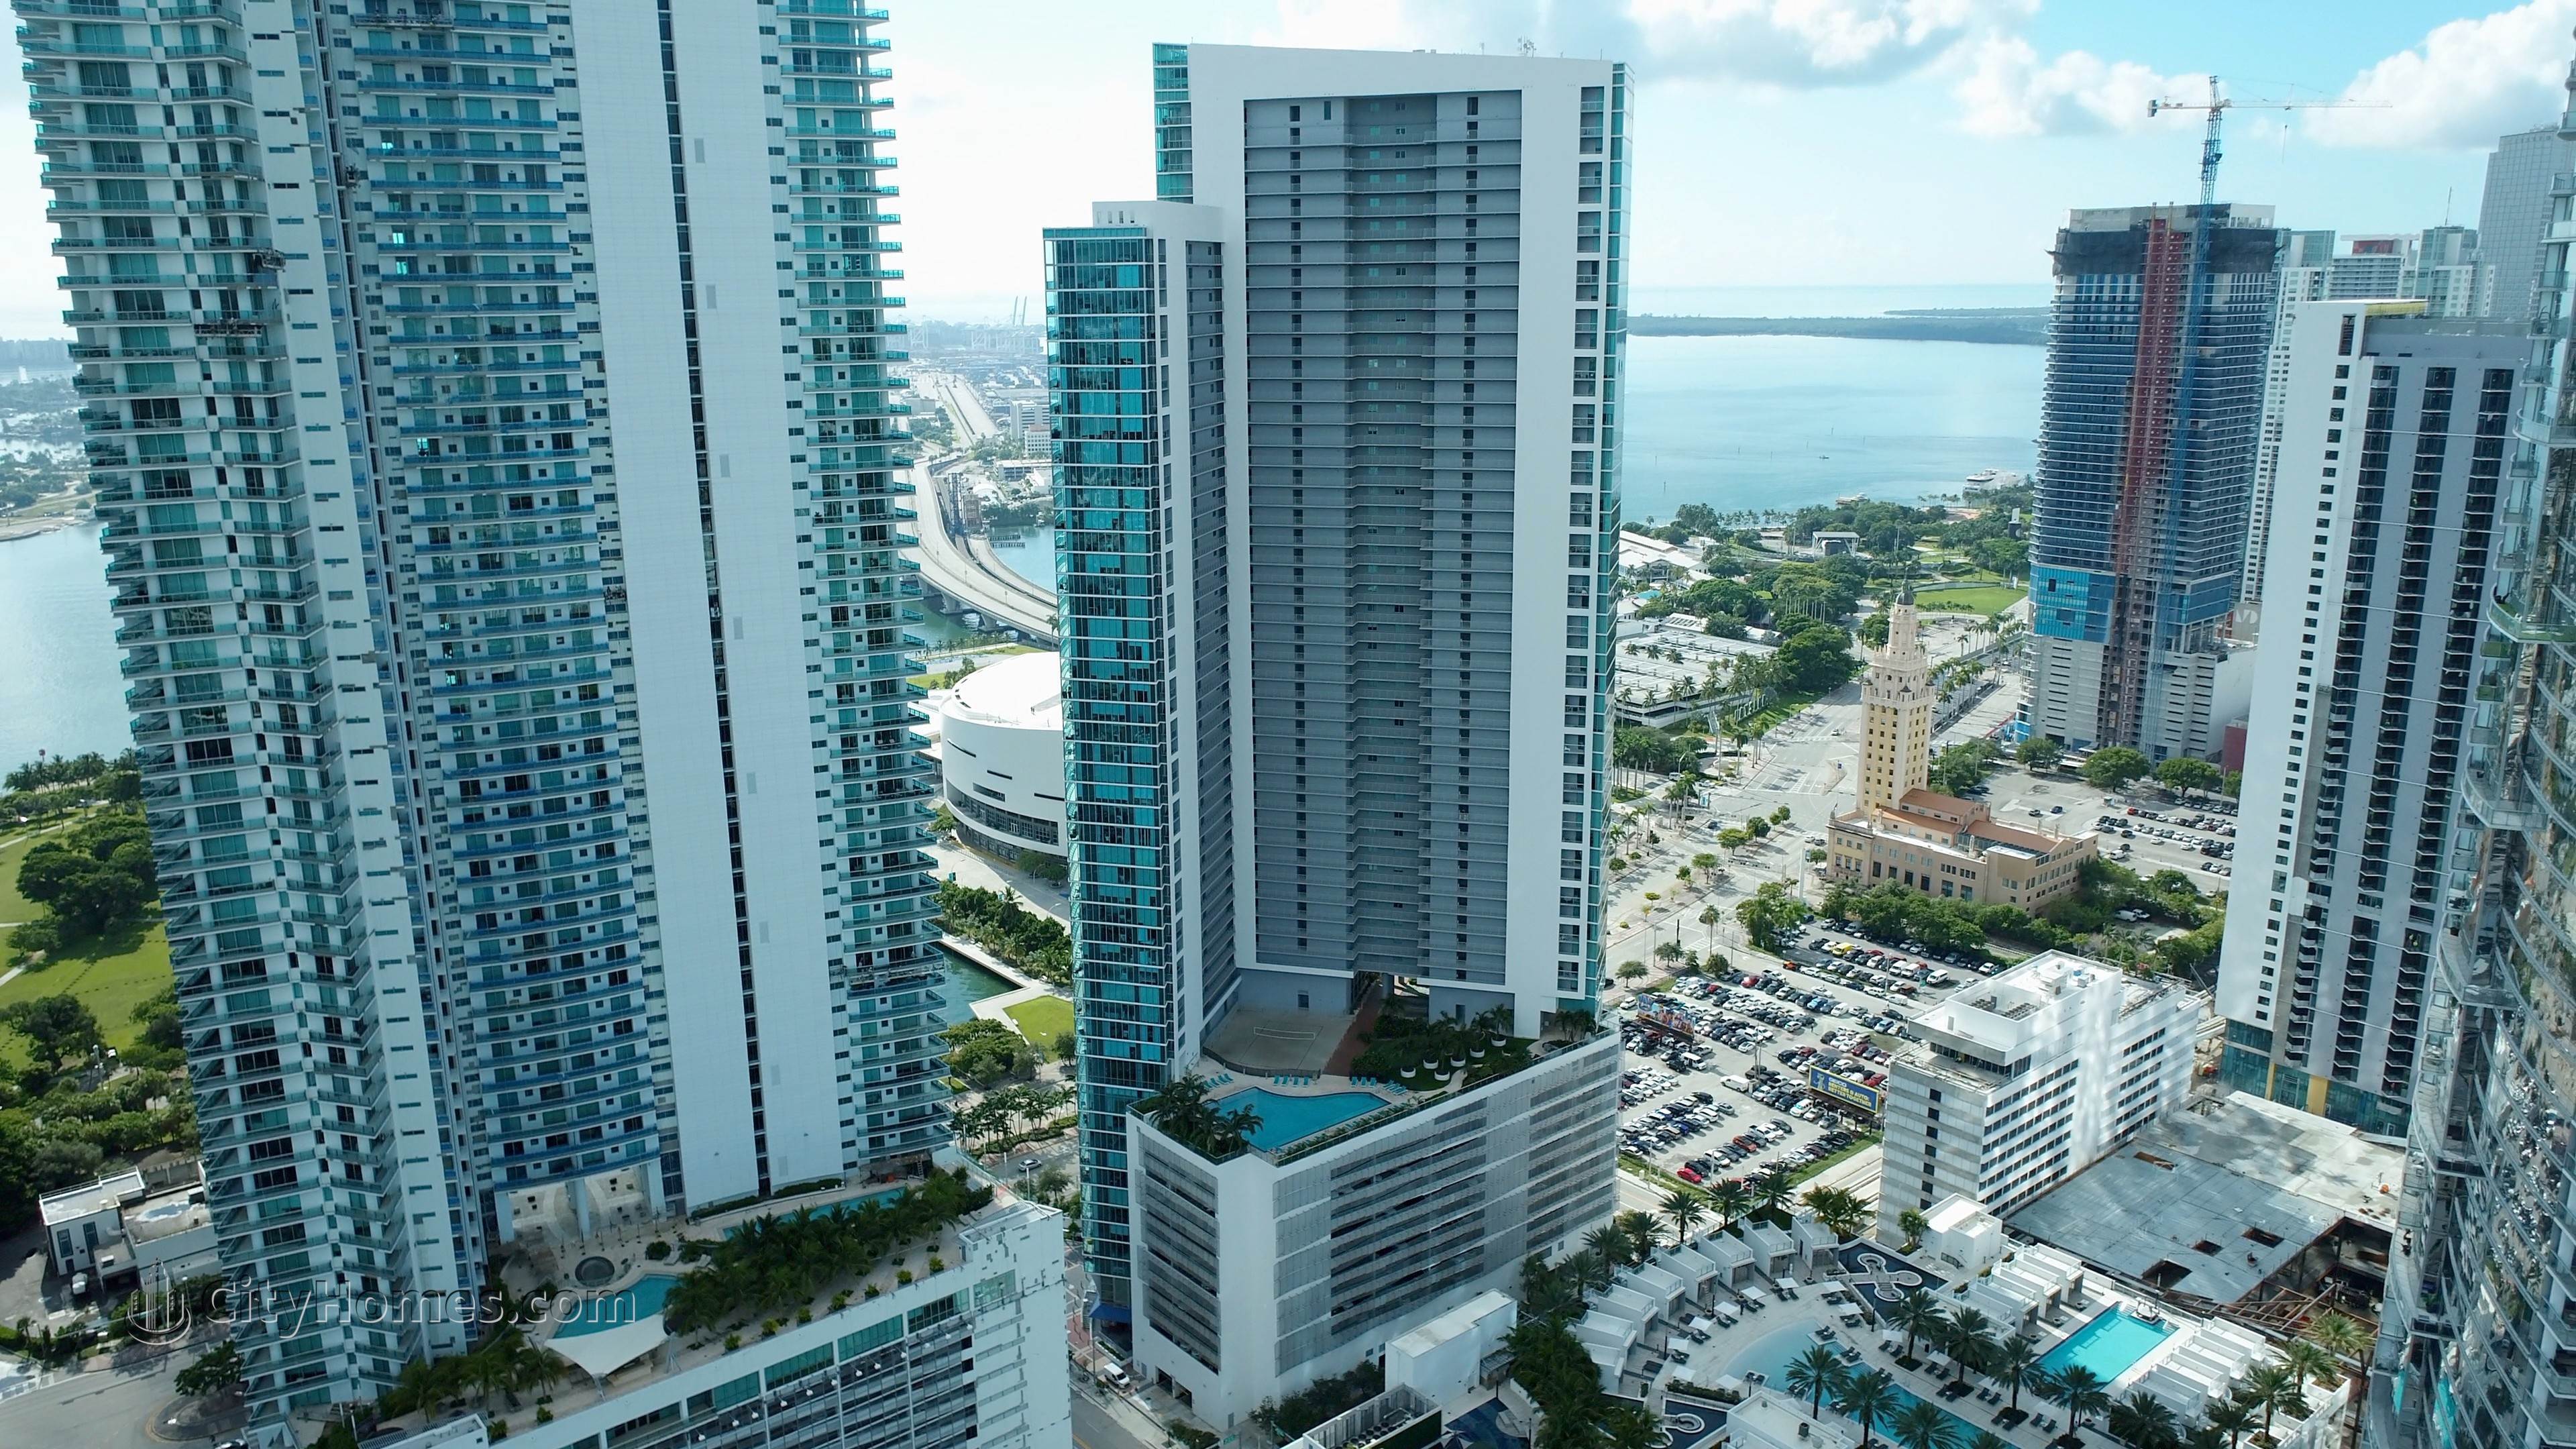 3. 900 Biscayne Bay edificio en 900 Biscayne Boulevard, Miami, FL 33132